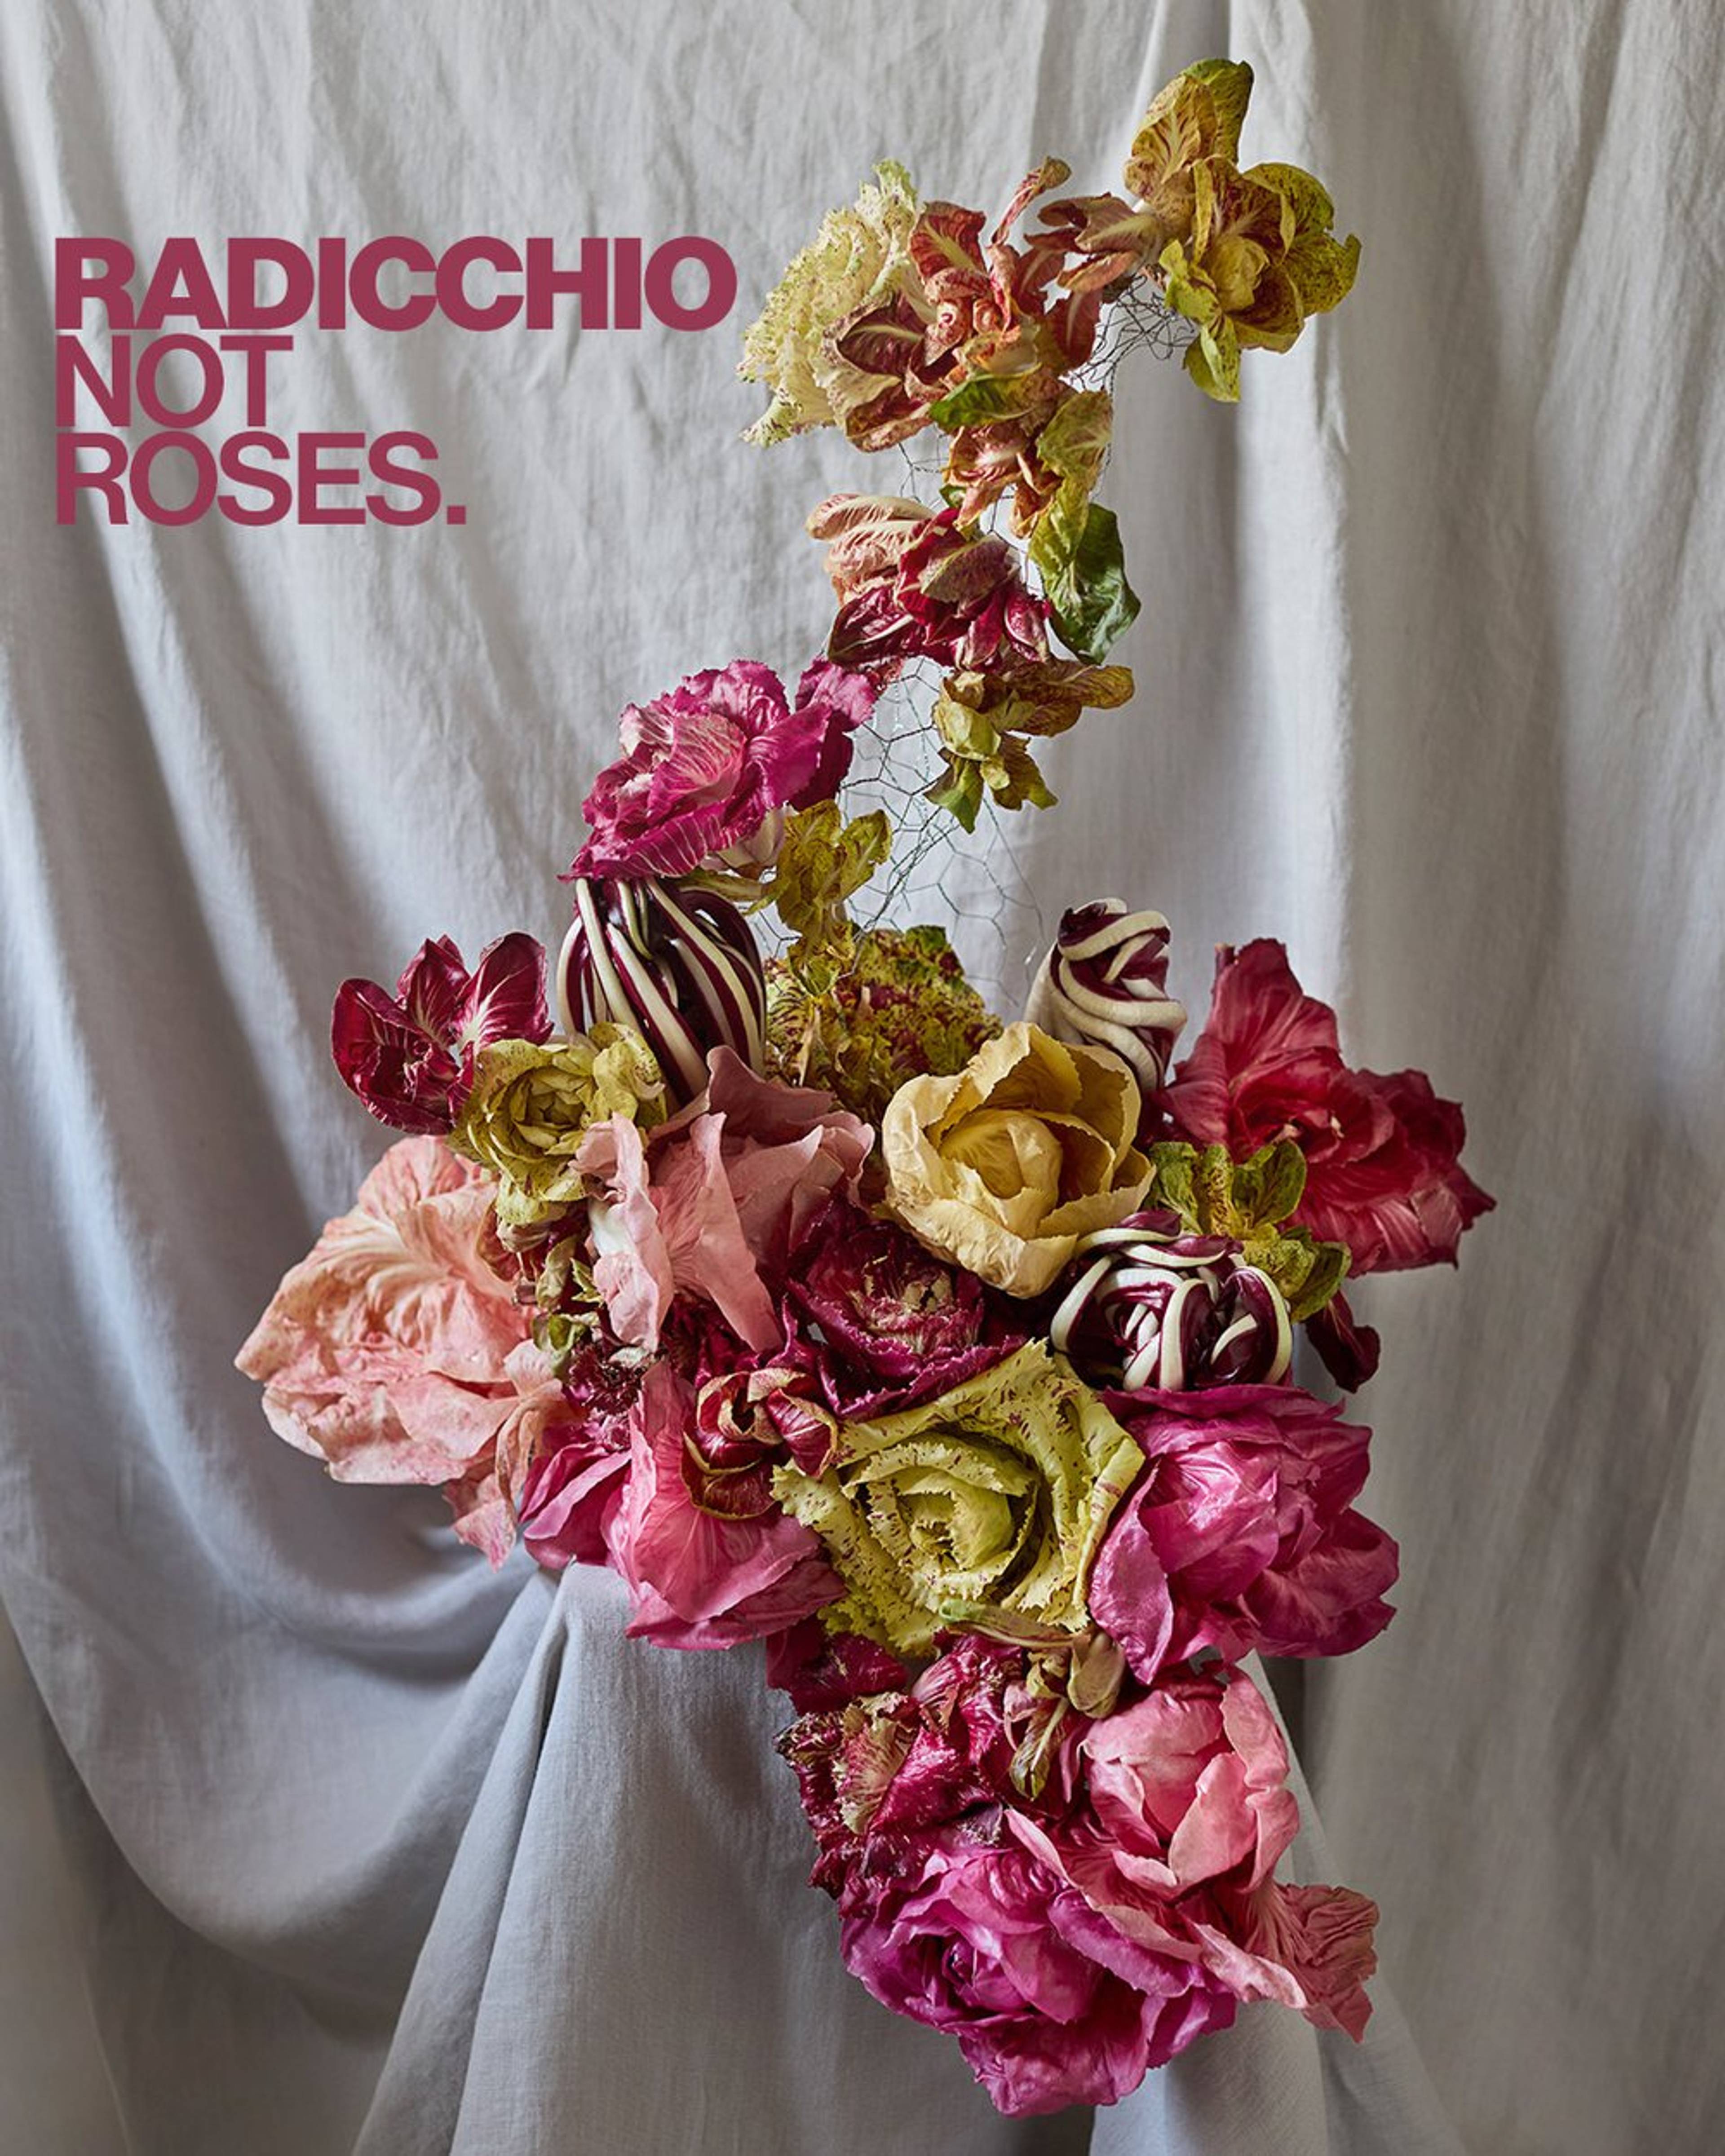 Floral display made of radicchio varieties